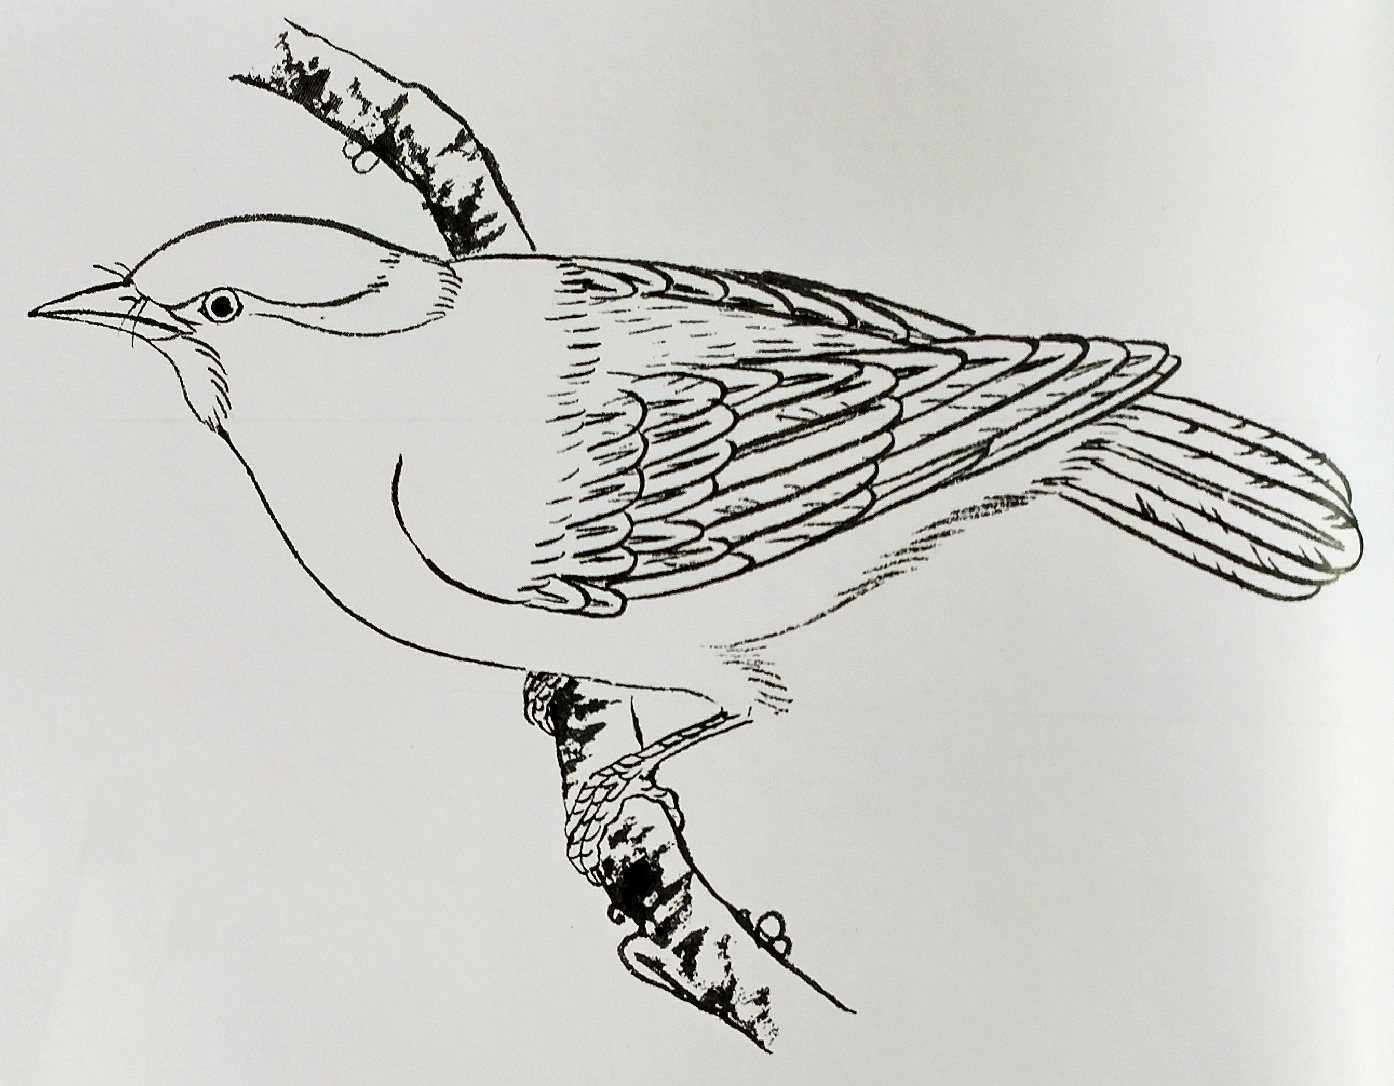 自学工笔禽鸟画:超清晰线稿